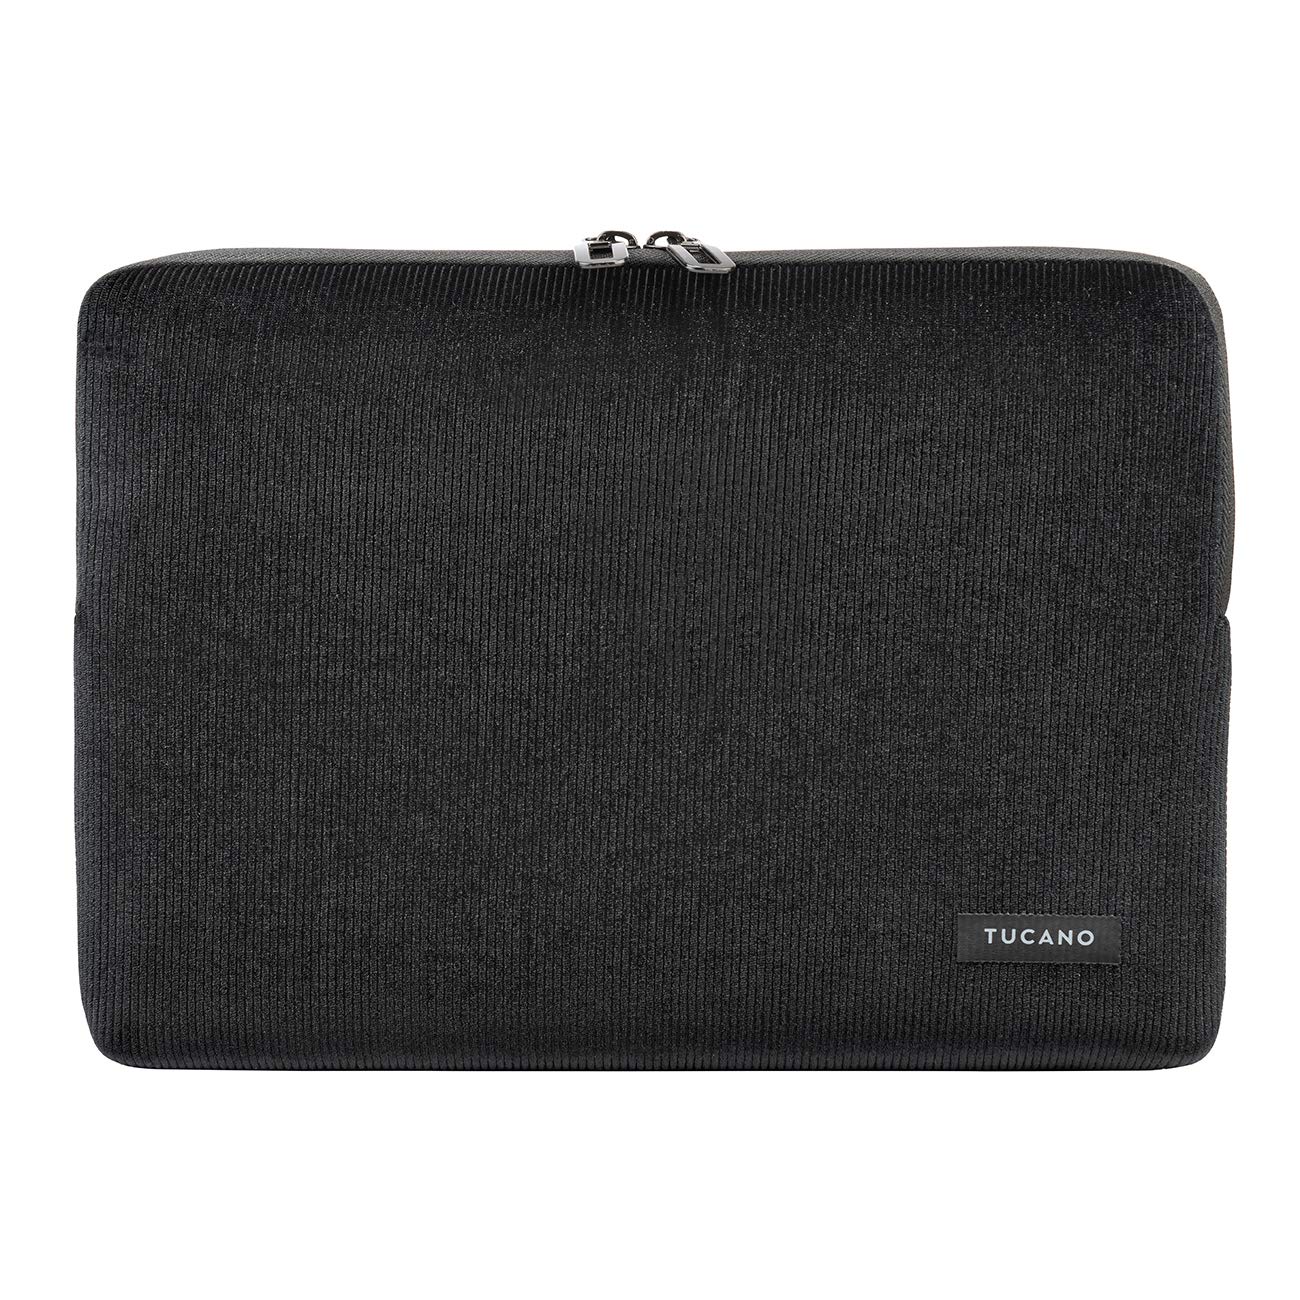 Tucano Second Skin Velluto Notebook Sleeve aus Cord und Neopren 12 Zoll, MacBook Pro 13 Zoll ab 2016, MacBook Air ab 2018, schwarz BFVELMB13-BK